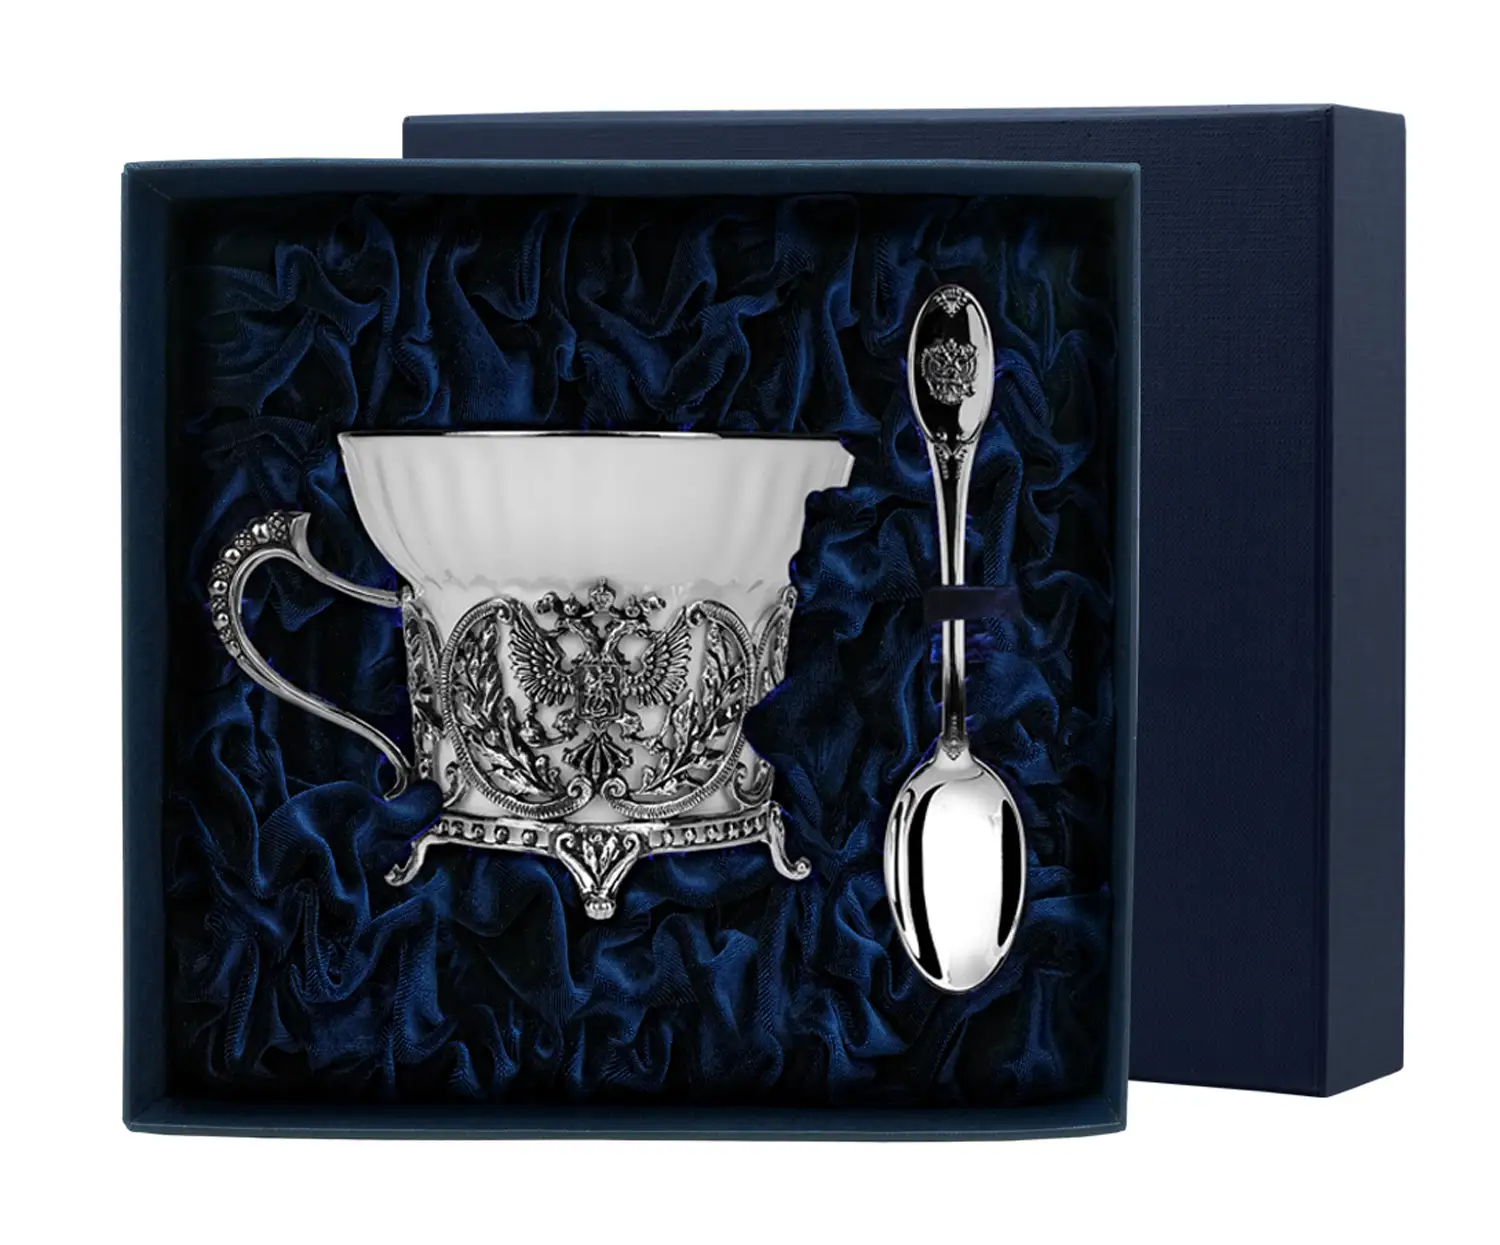 Набор чайная чашка Герб: ложка, чашка (Серебро 925) набор чайная чашка император ложка чашка серебро 925